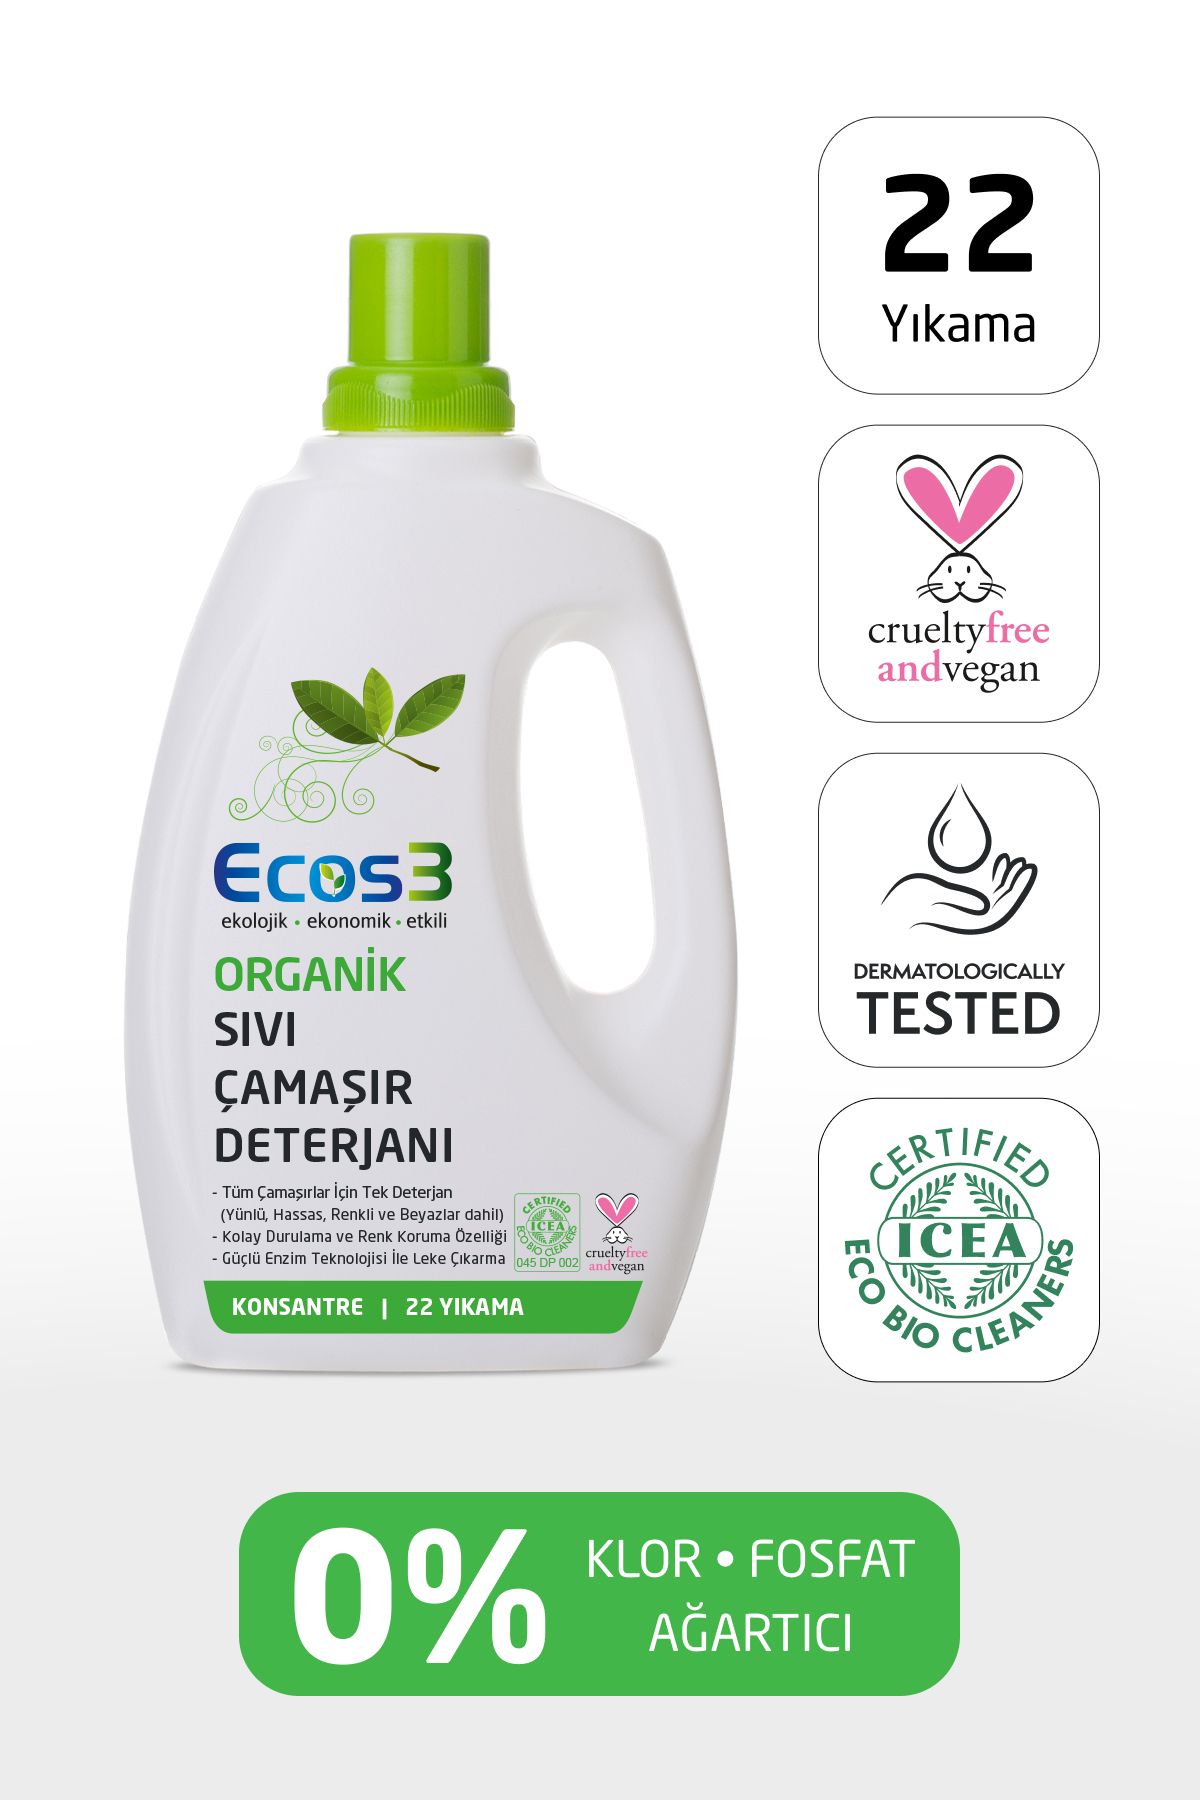 Ecos3 Sıvı Çamaşır Deterjanı, Organik & Vegan Sertifikalı, Bitkisel, Extra Konsantre, 22 Yıkama, 750 ml